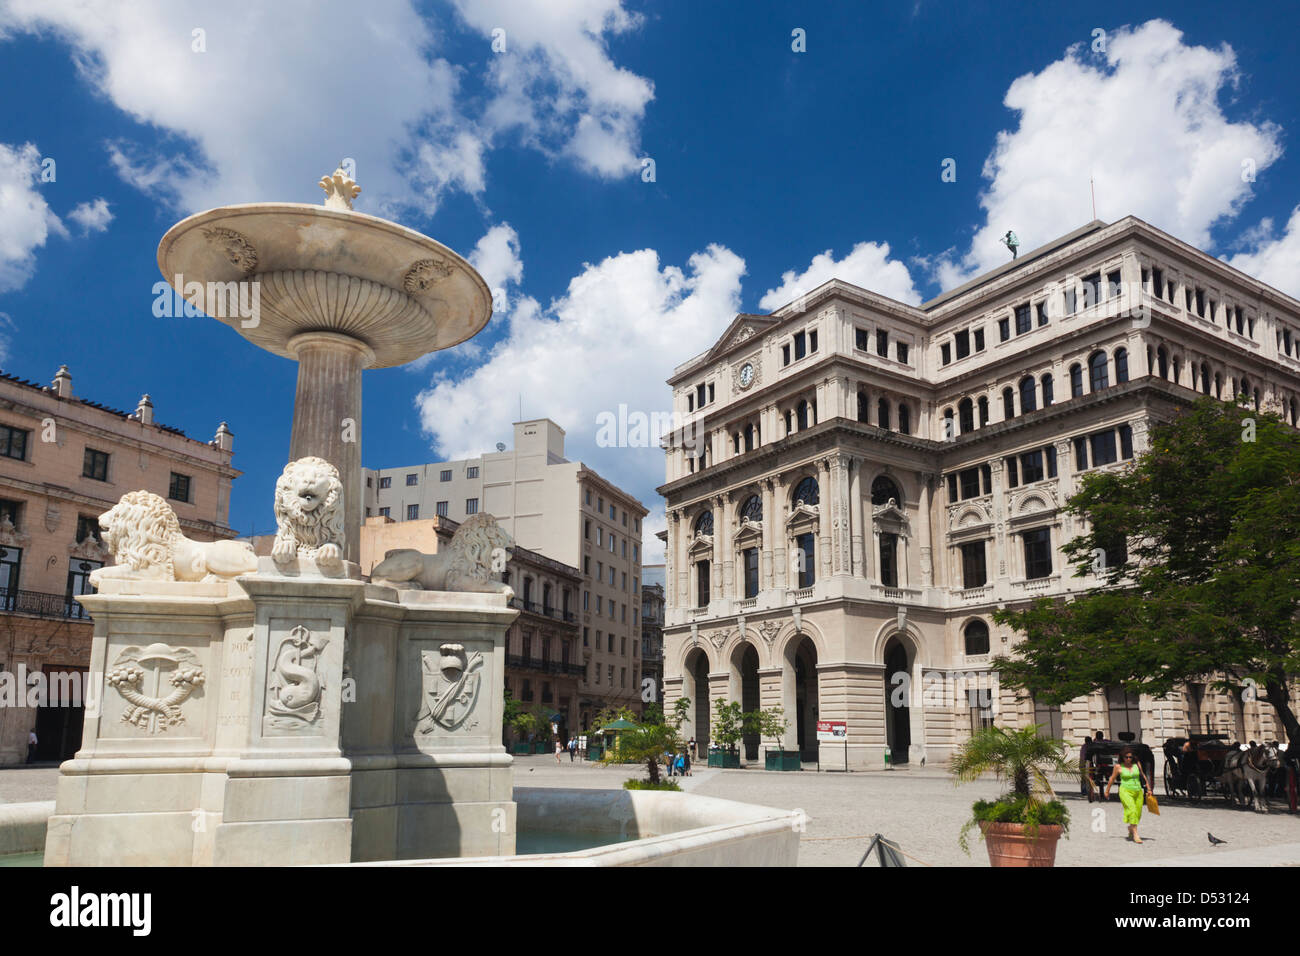 Cuba, Havana, Havana Vieja, Plaza de San Francisco de Asis, Lonja del Commercio building and Fuente de los Leones fountain Stock Photo